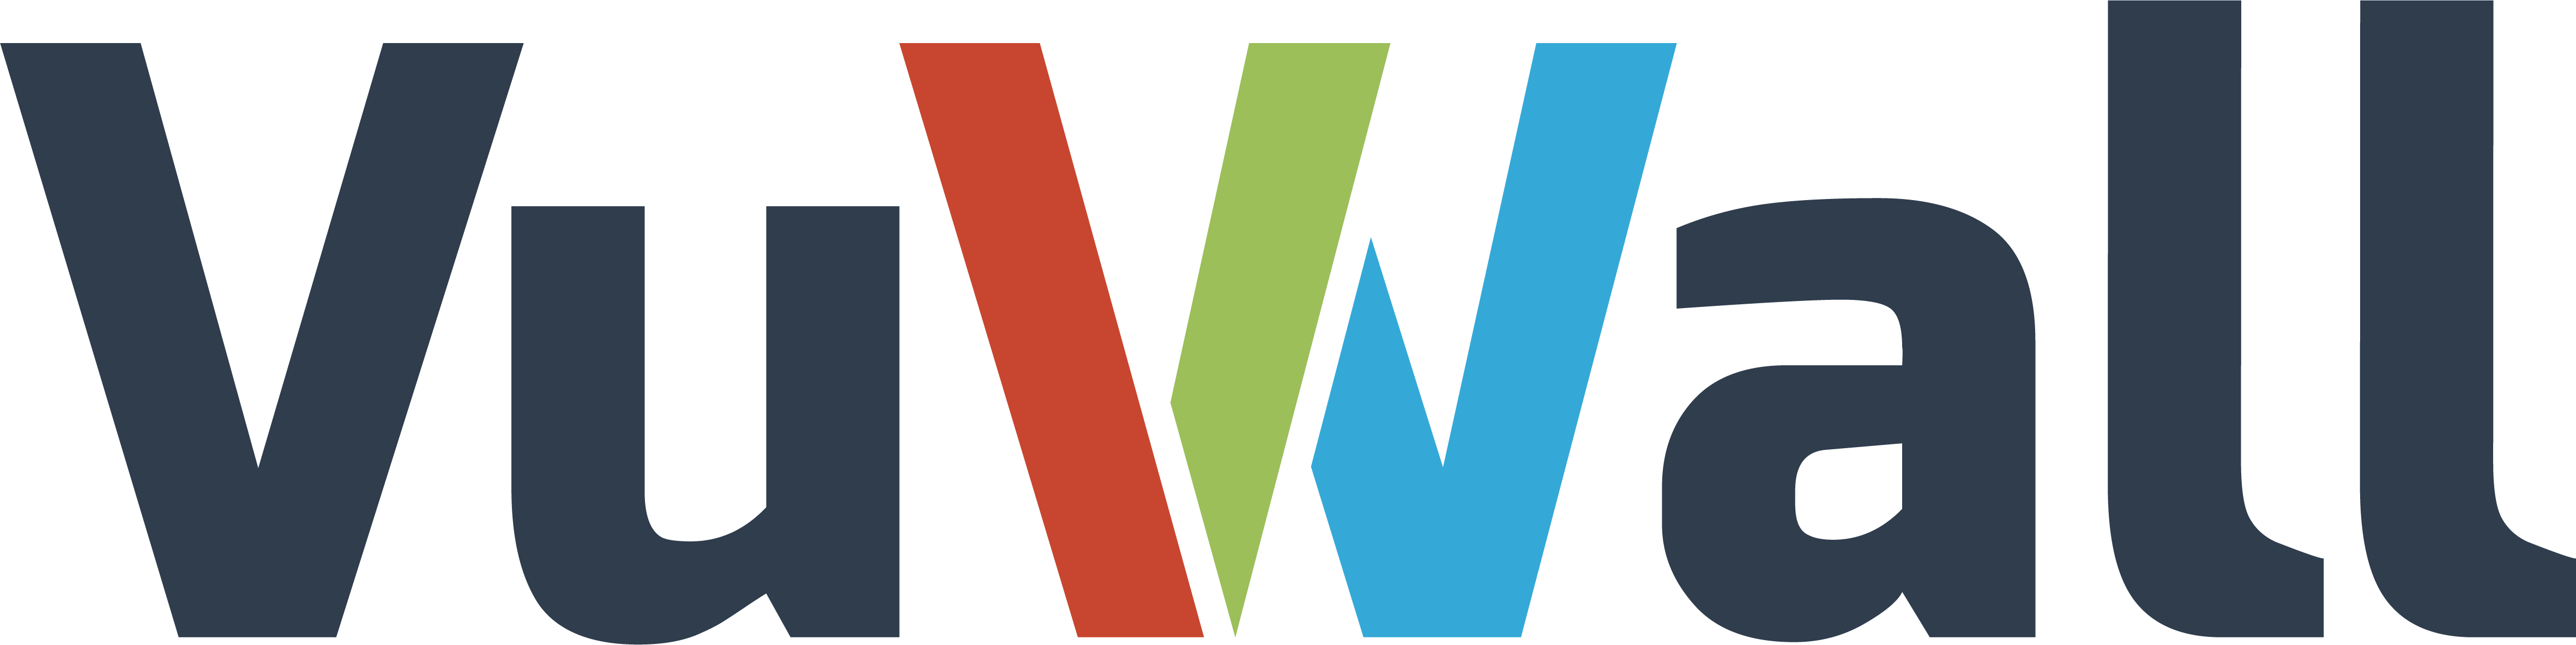 VuWall logo